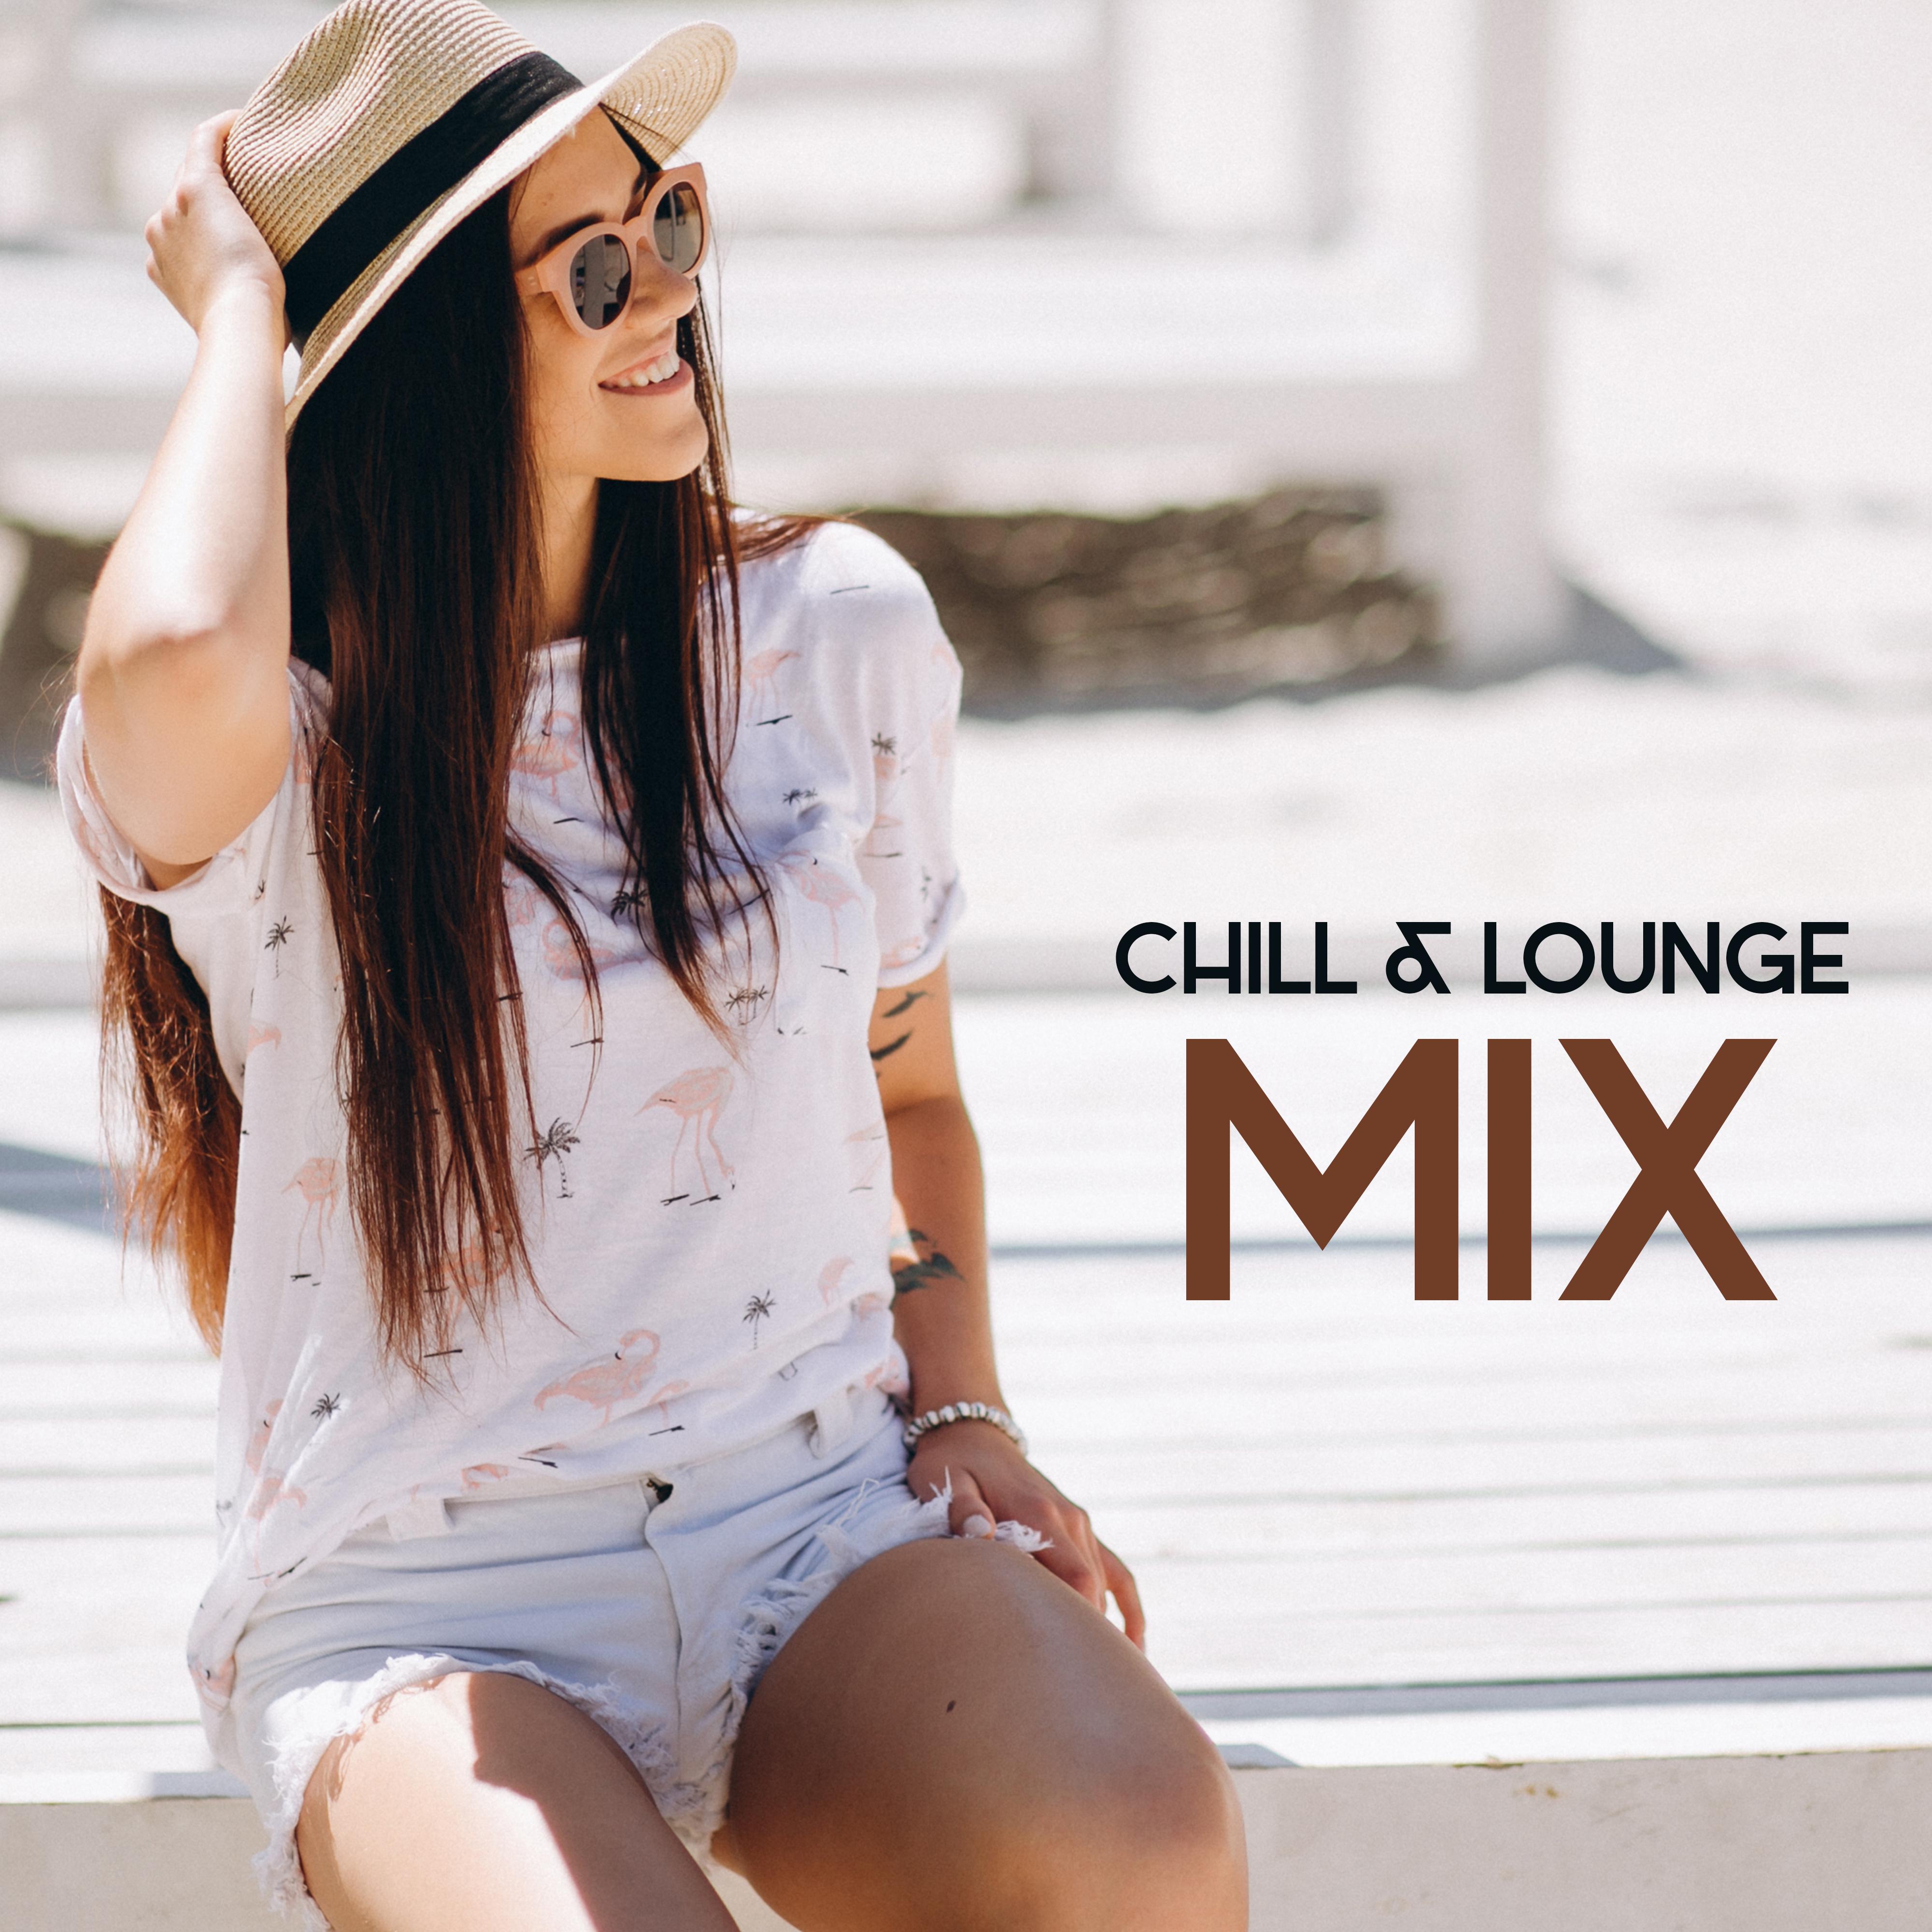 Chill & Lounge Mix